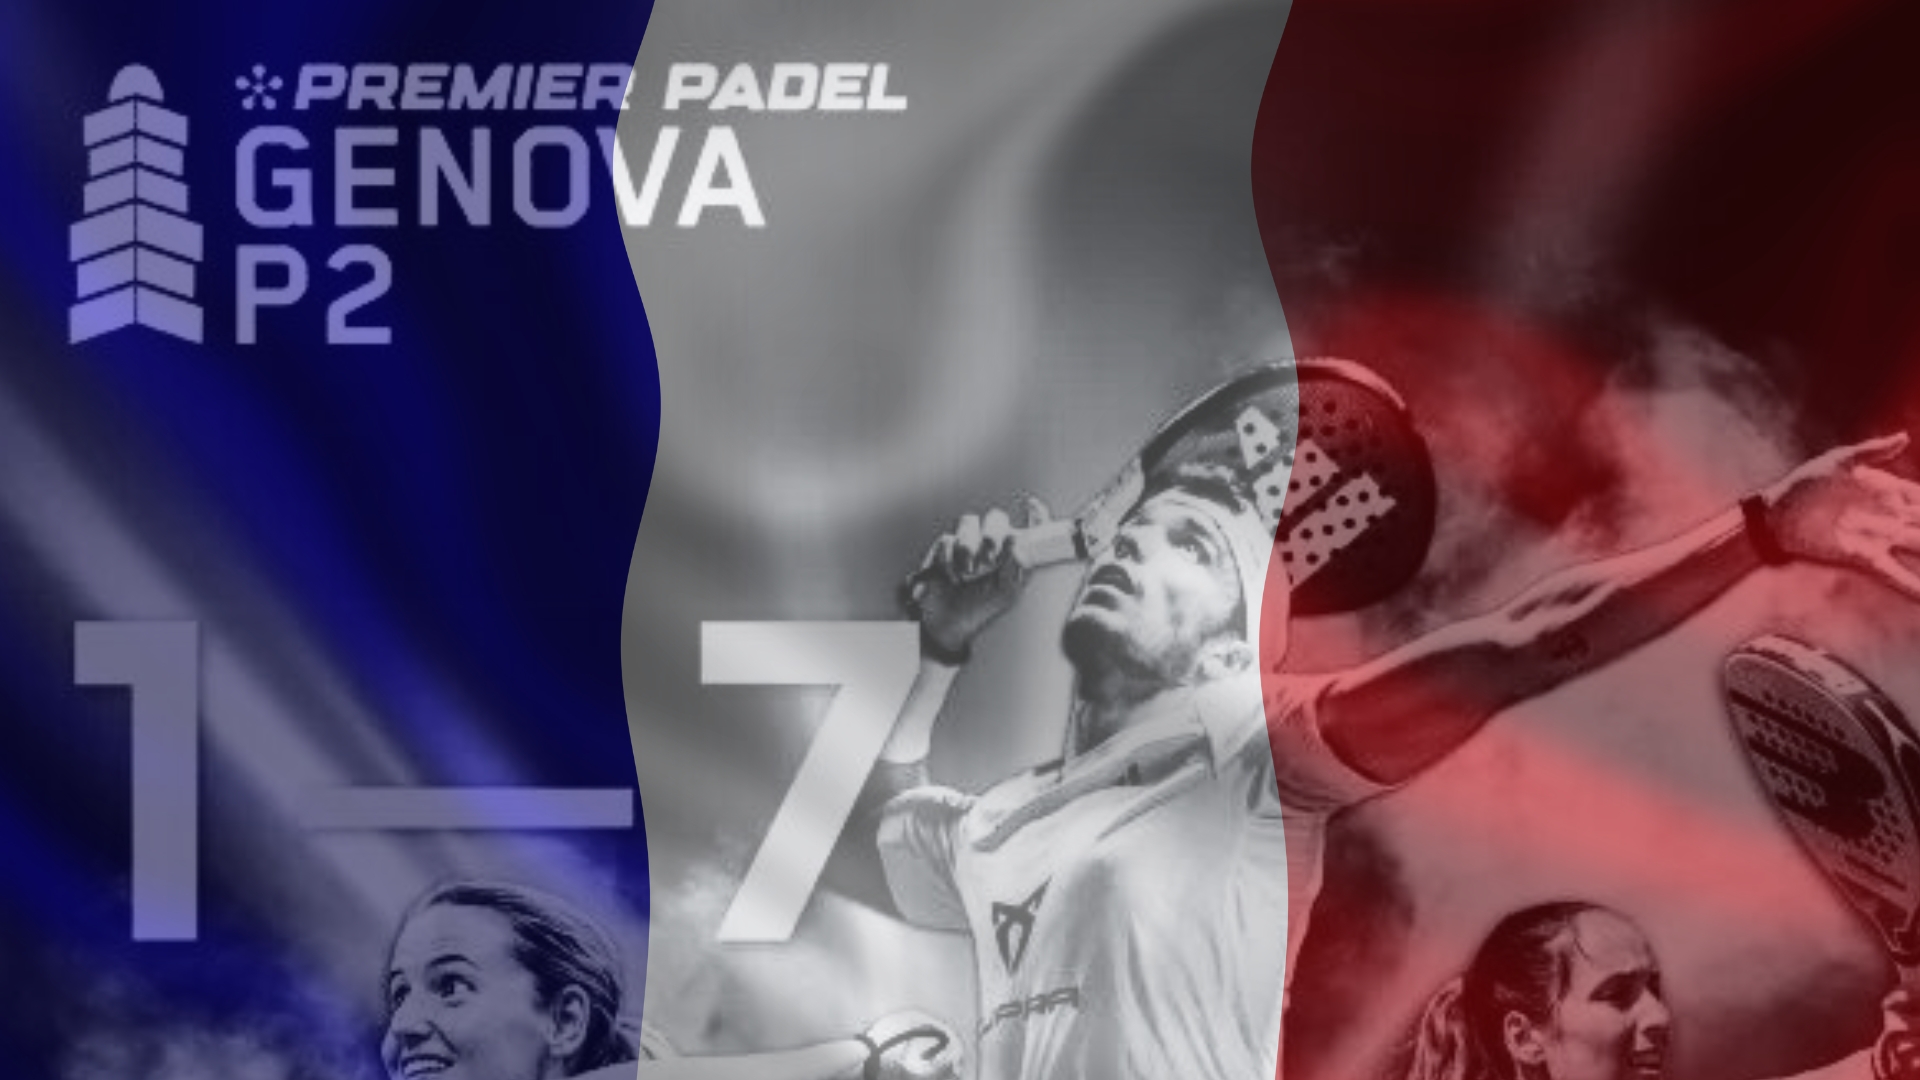 Premier Padel Genova P2 – Les tricolores en action et un duel franco-français en Italie !